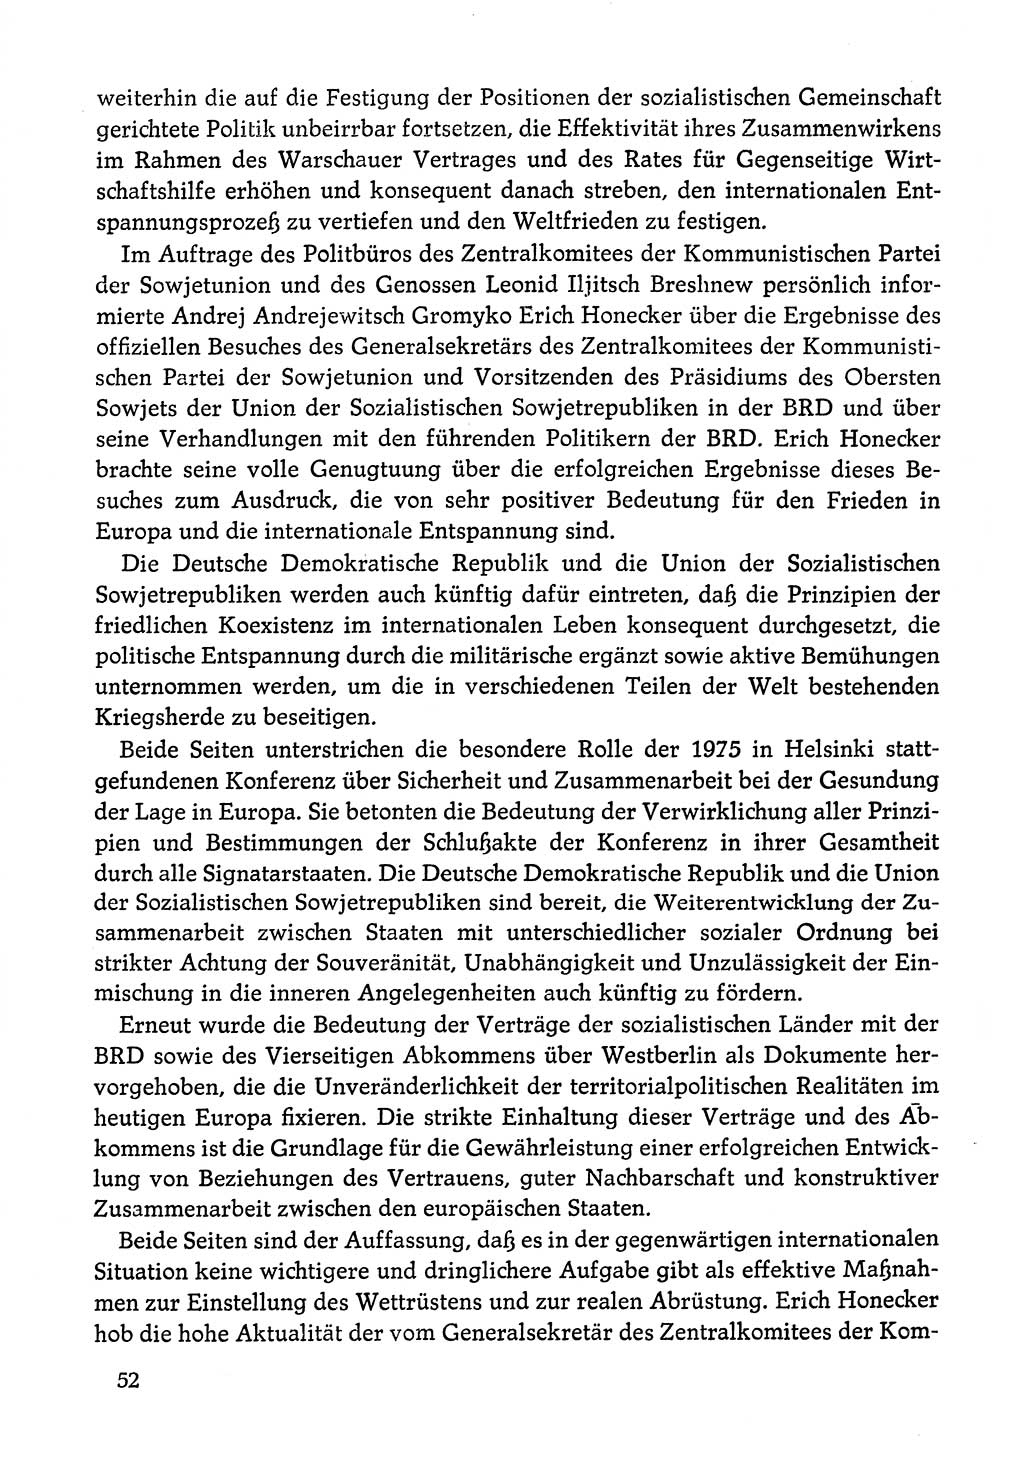 Dokumente der Sozialistischen Einheitspartei Deutschlands (SED) [Deutsche Demokratische Republik (DDR)] 1978-1979, Seite 52 (Dok. SED DDR 1978-1979, S. 52)